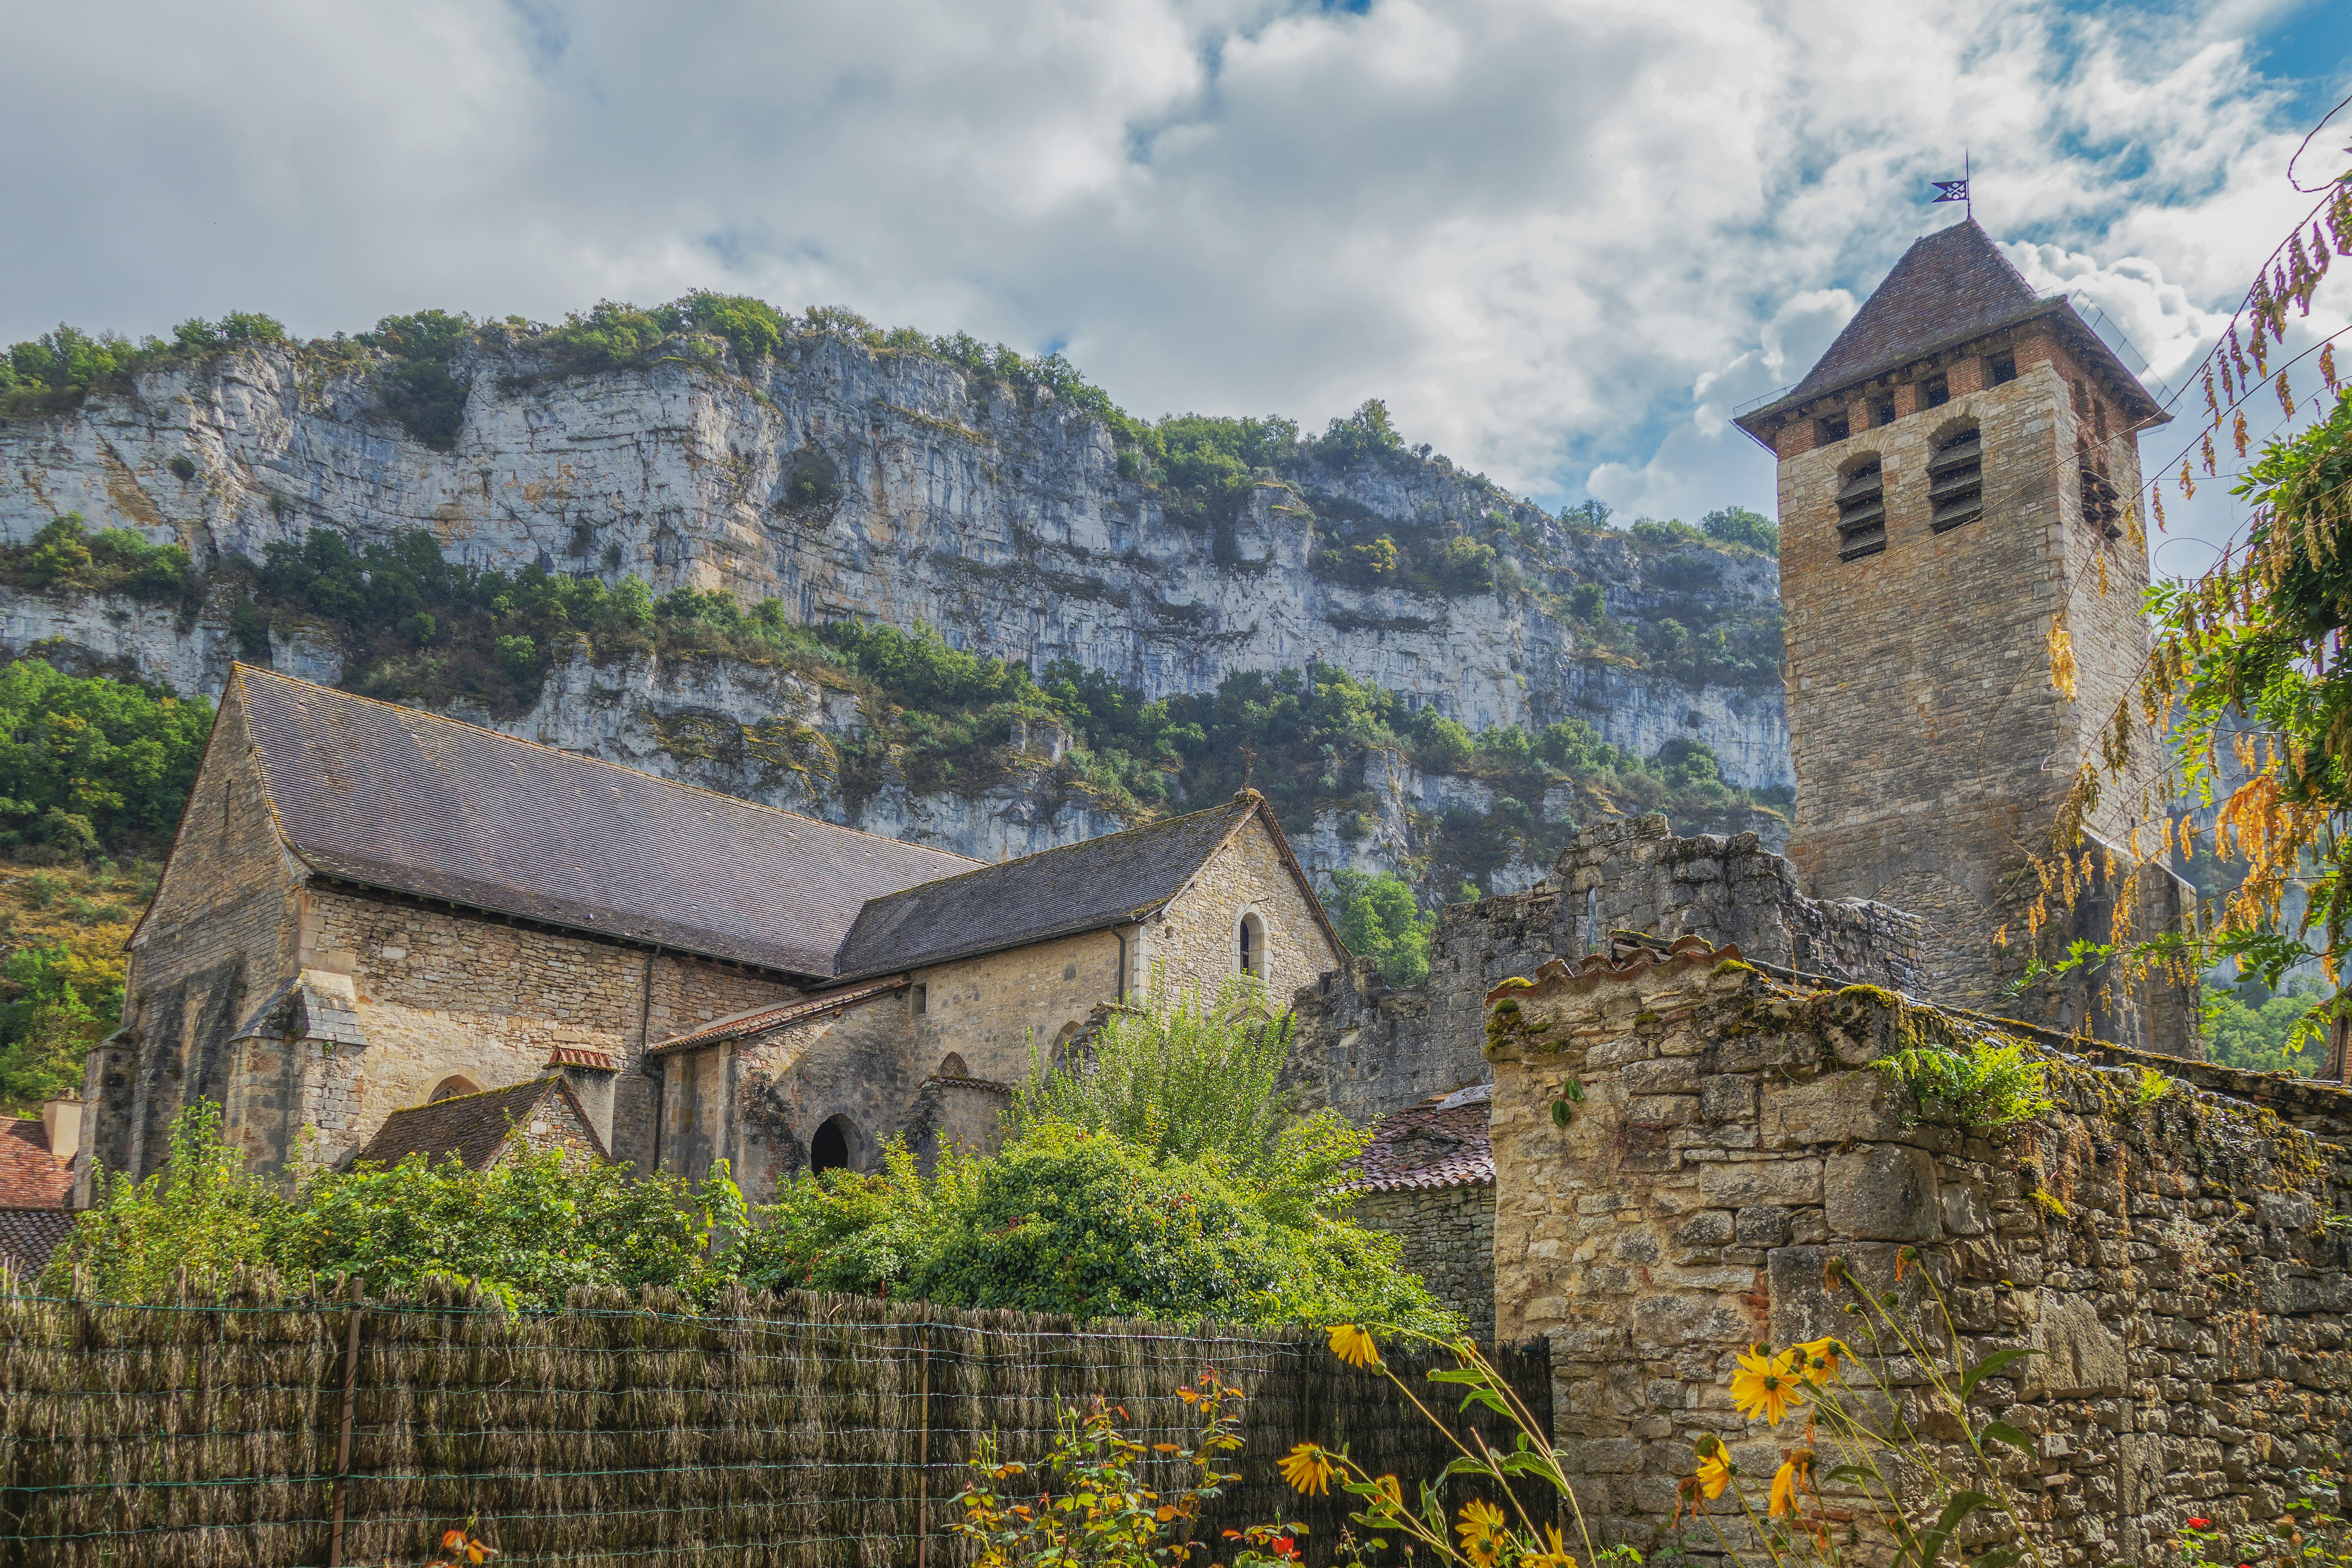 Paysages, villages, et monuments le long de la vallée du Célé dans le département du Lot en France.